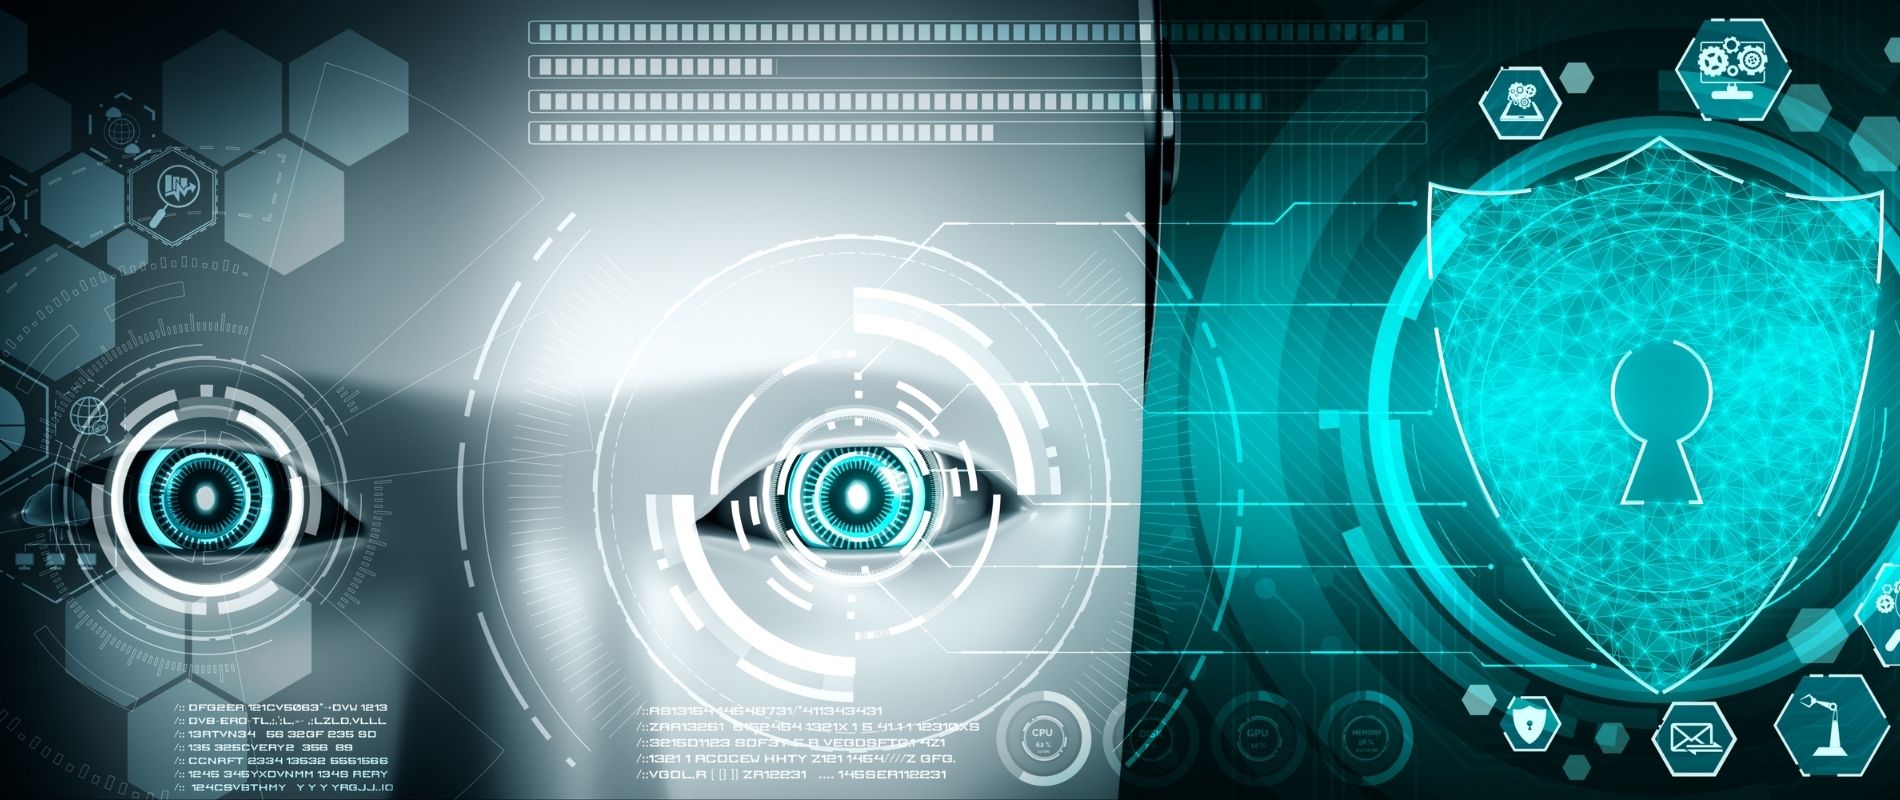 Inteligência artificial é aliada para detecção de anomalia e fraude